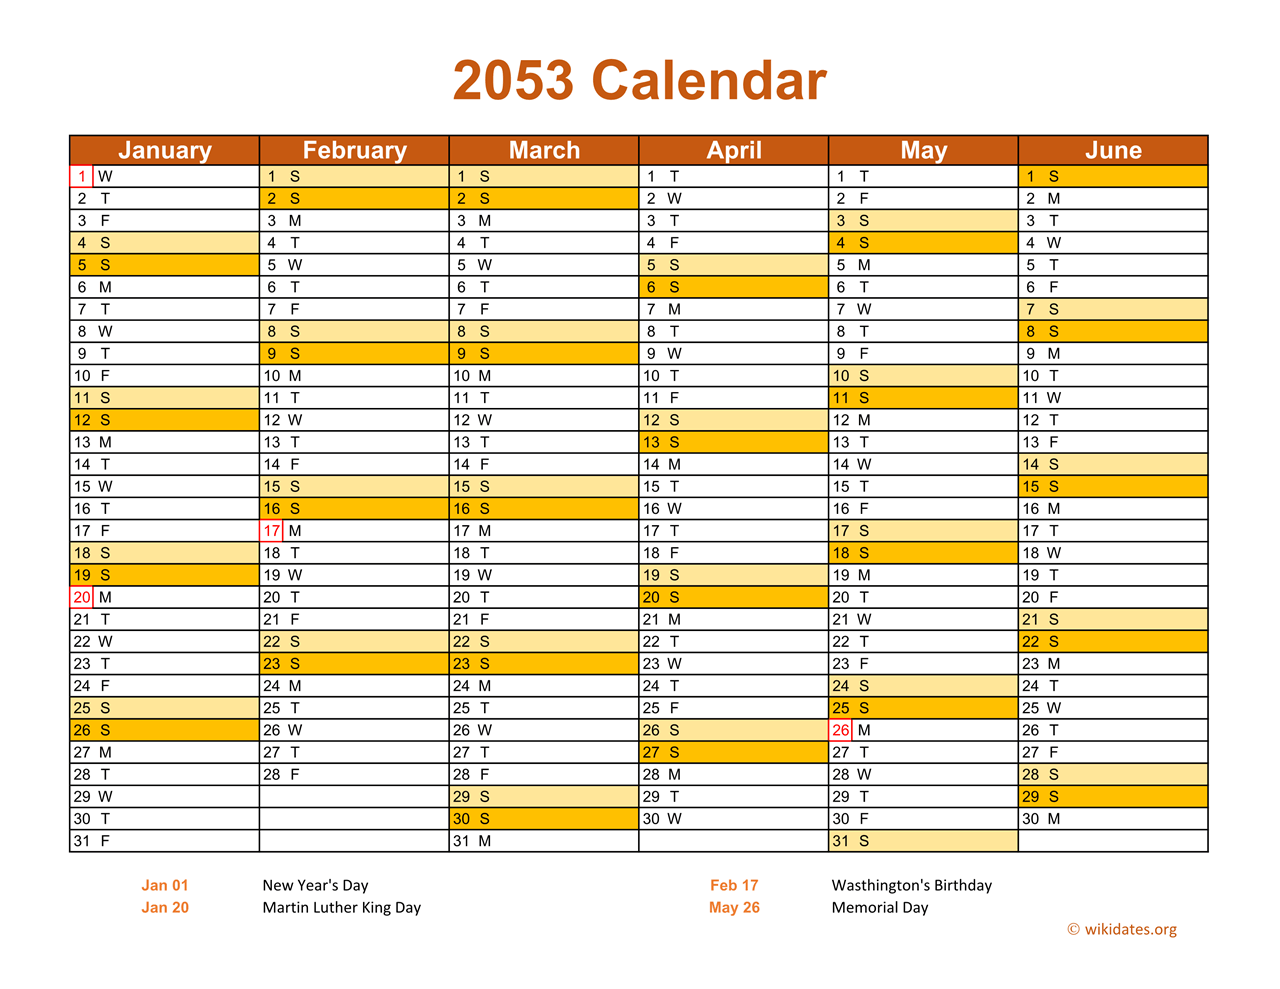 2053 Calendar On 2 Pages Landscape Orientation